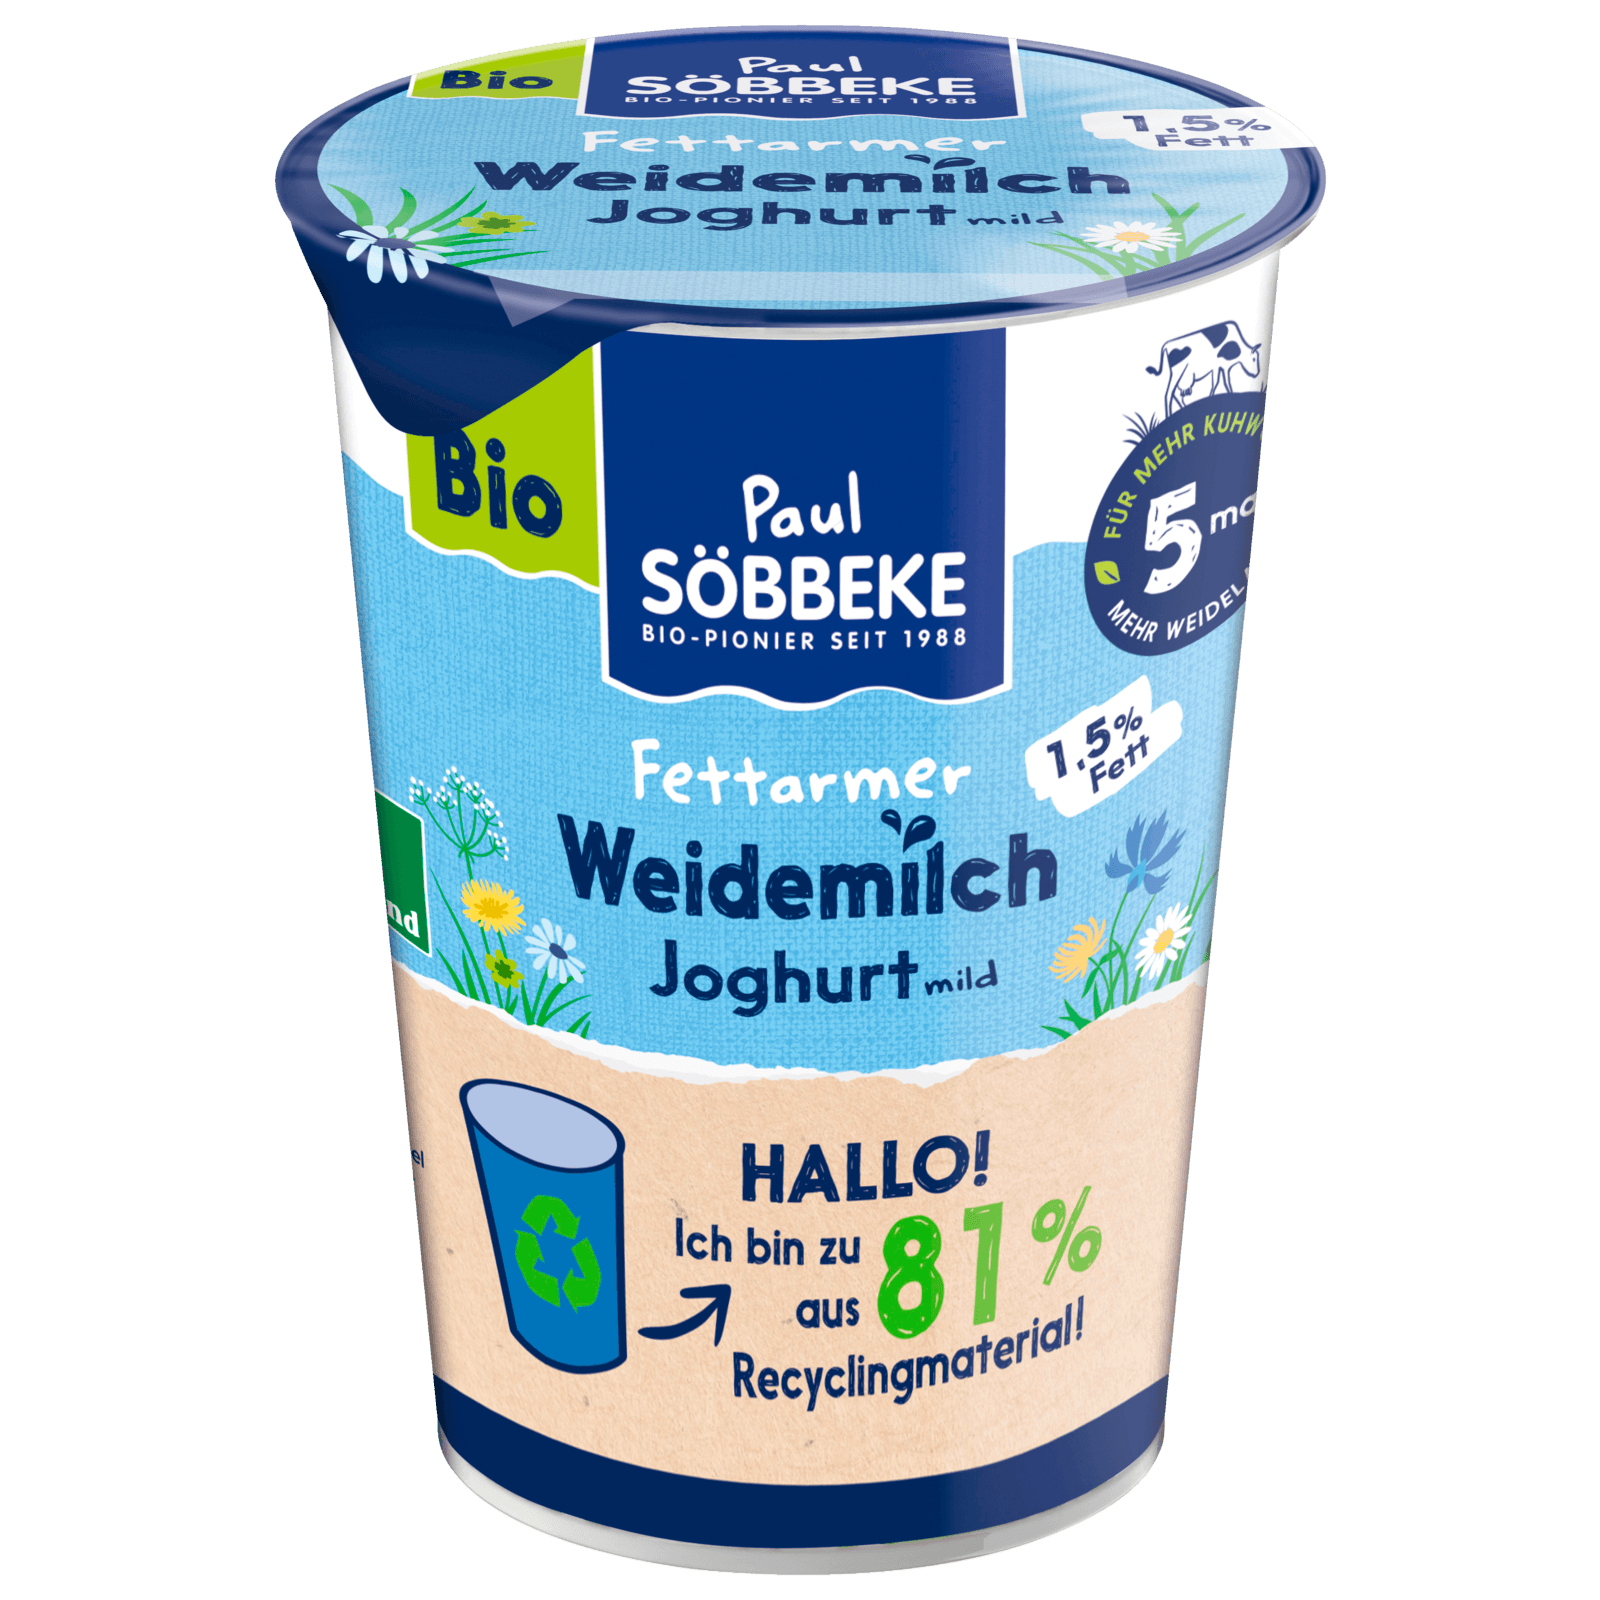 Söbbeke Bioland Joghurt Mild 1,5% 500g bei REWE online bestellen!